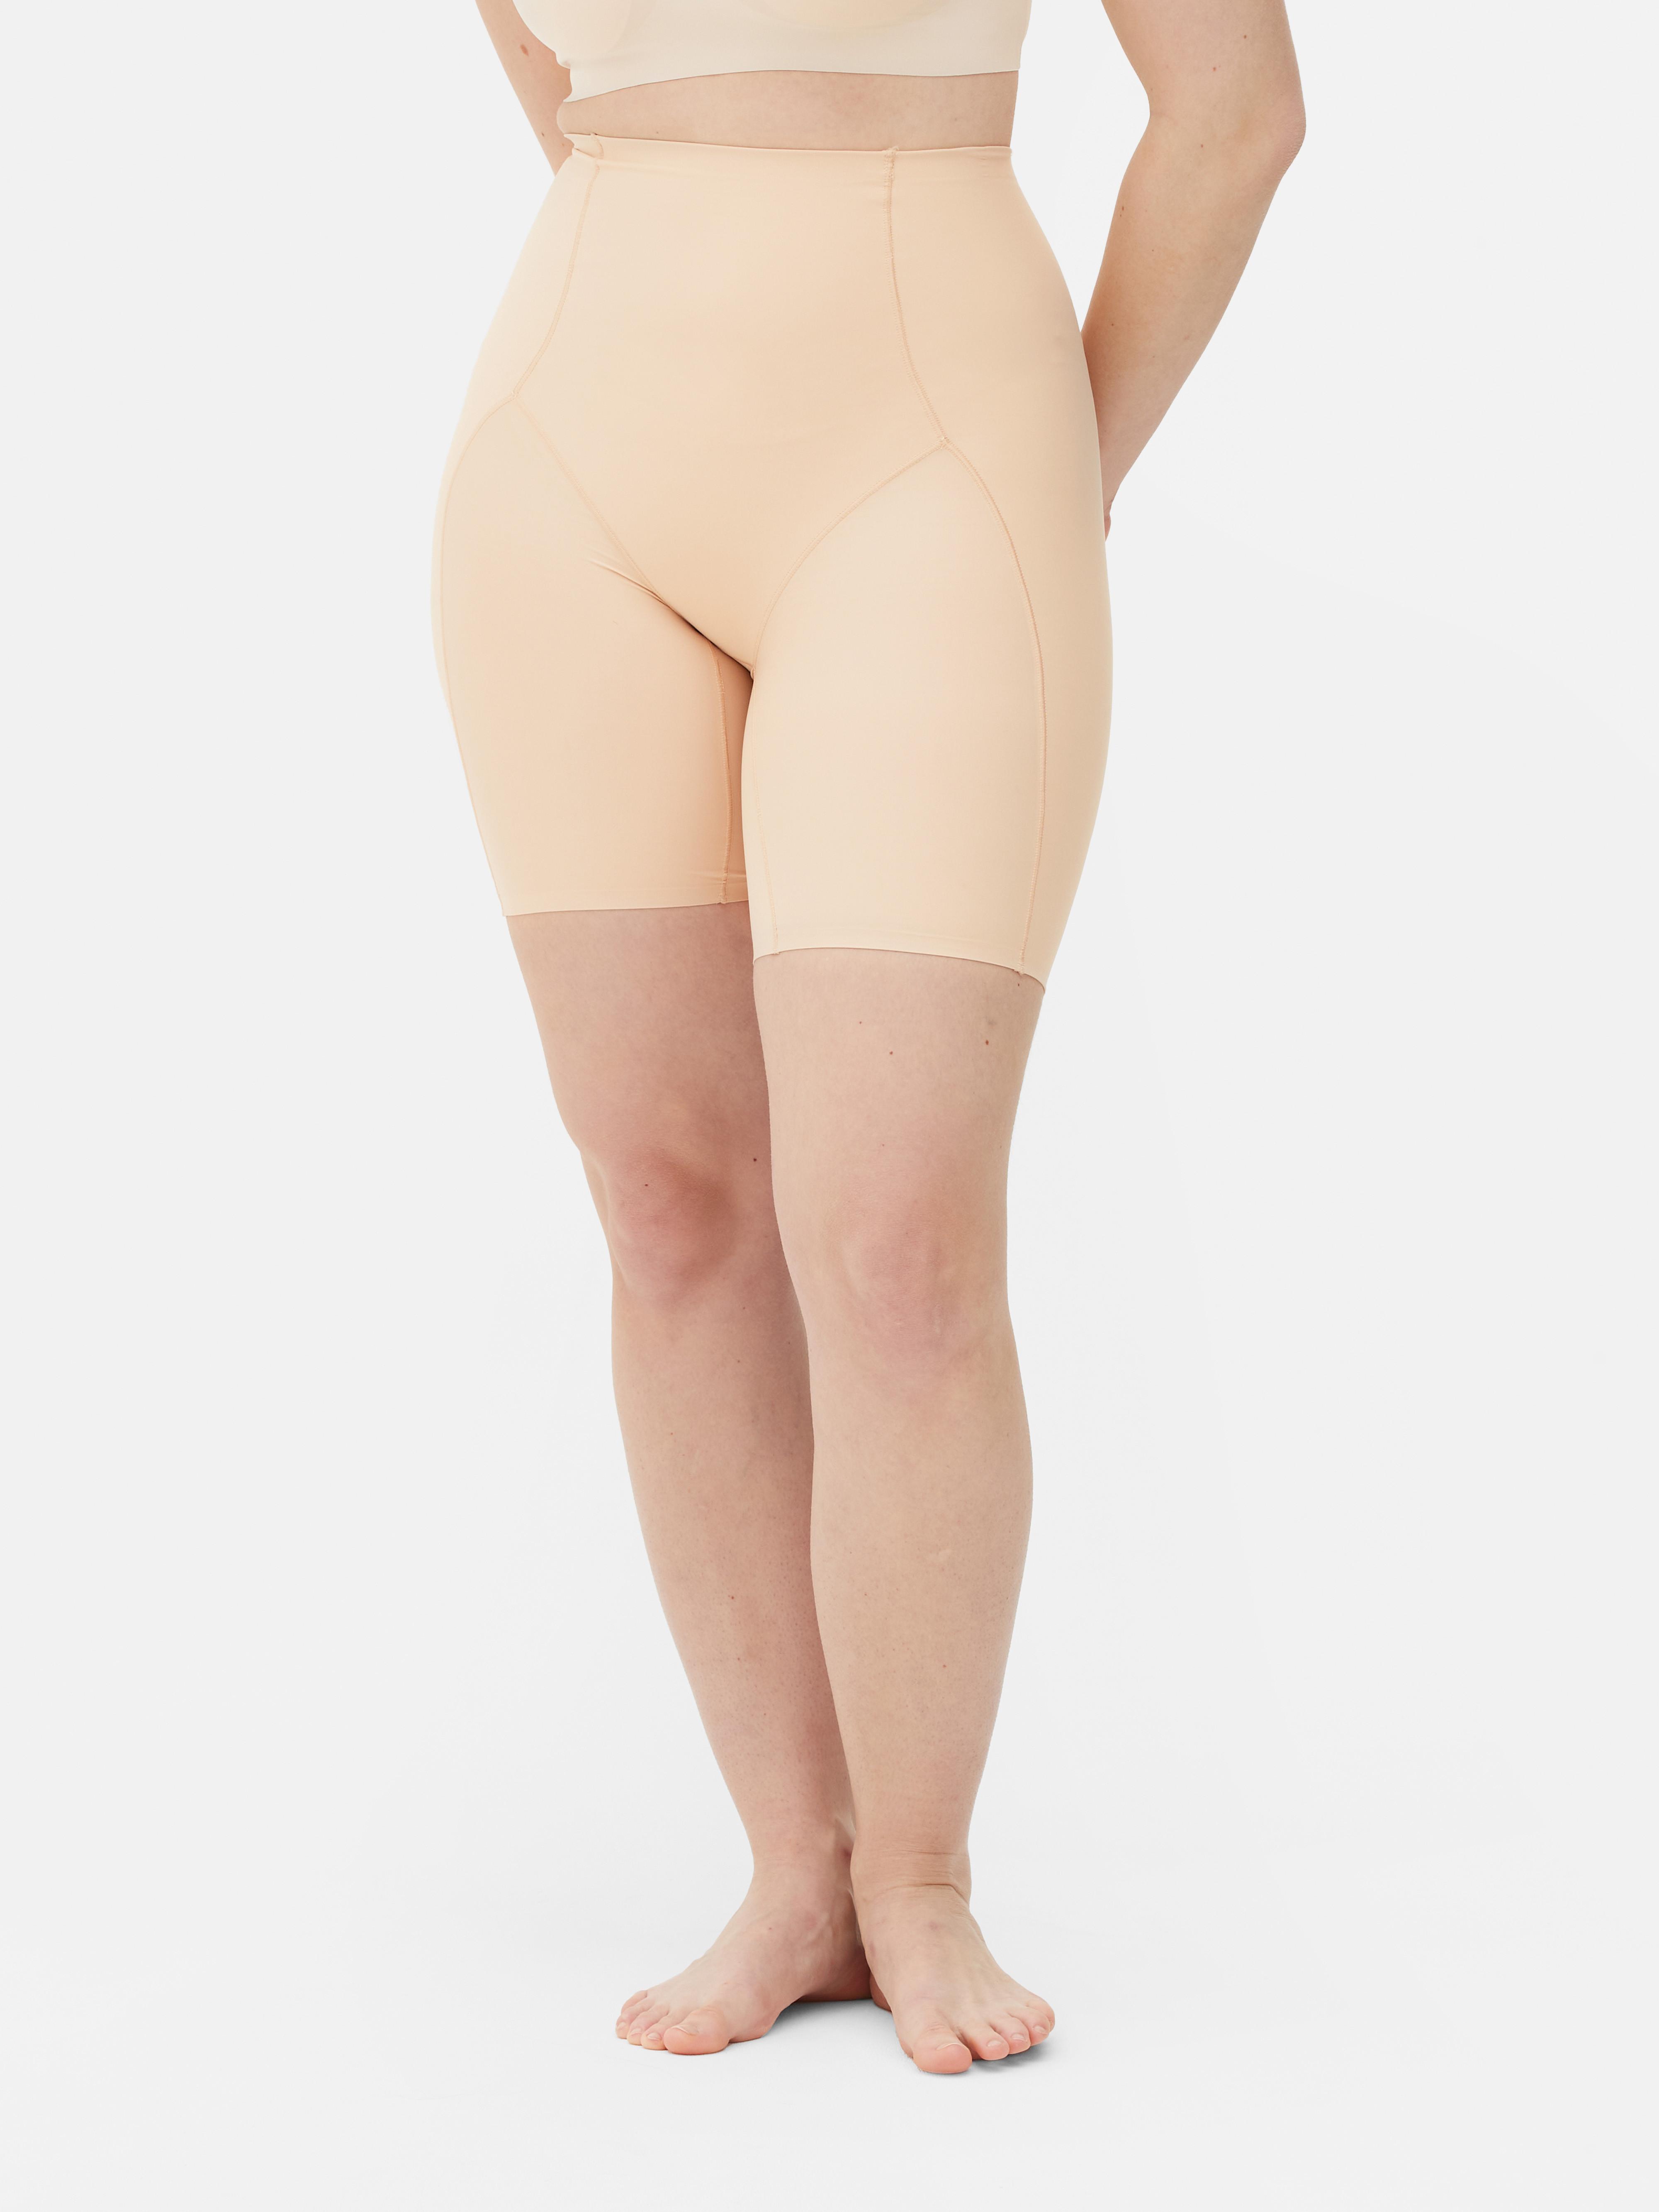 Soma Shapewear Smoothing Shorts Woman Size Medium 1119 Beige Tan Set of 2